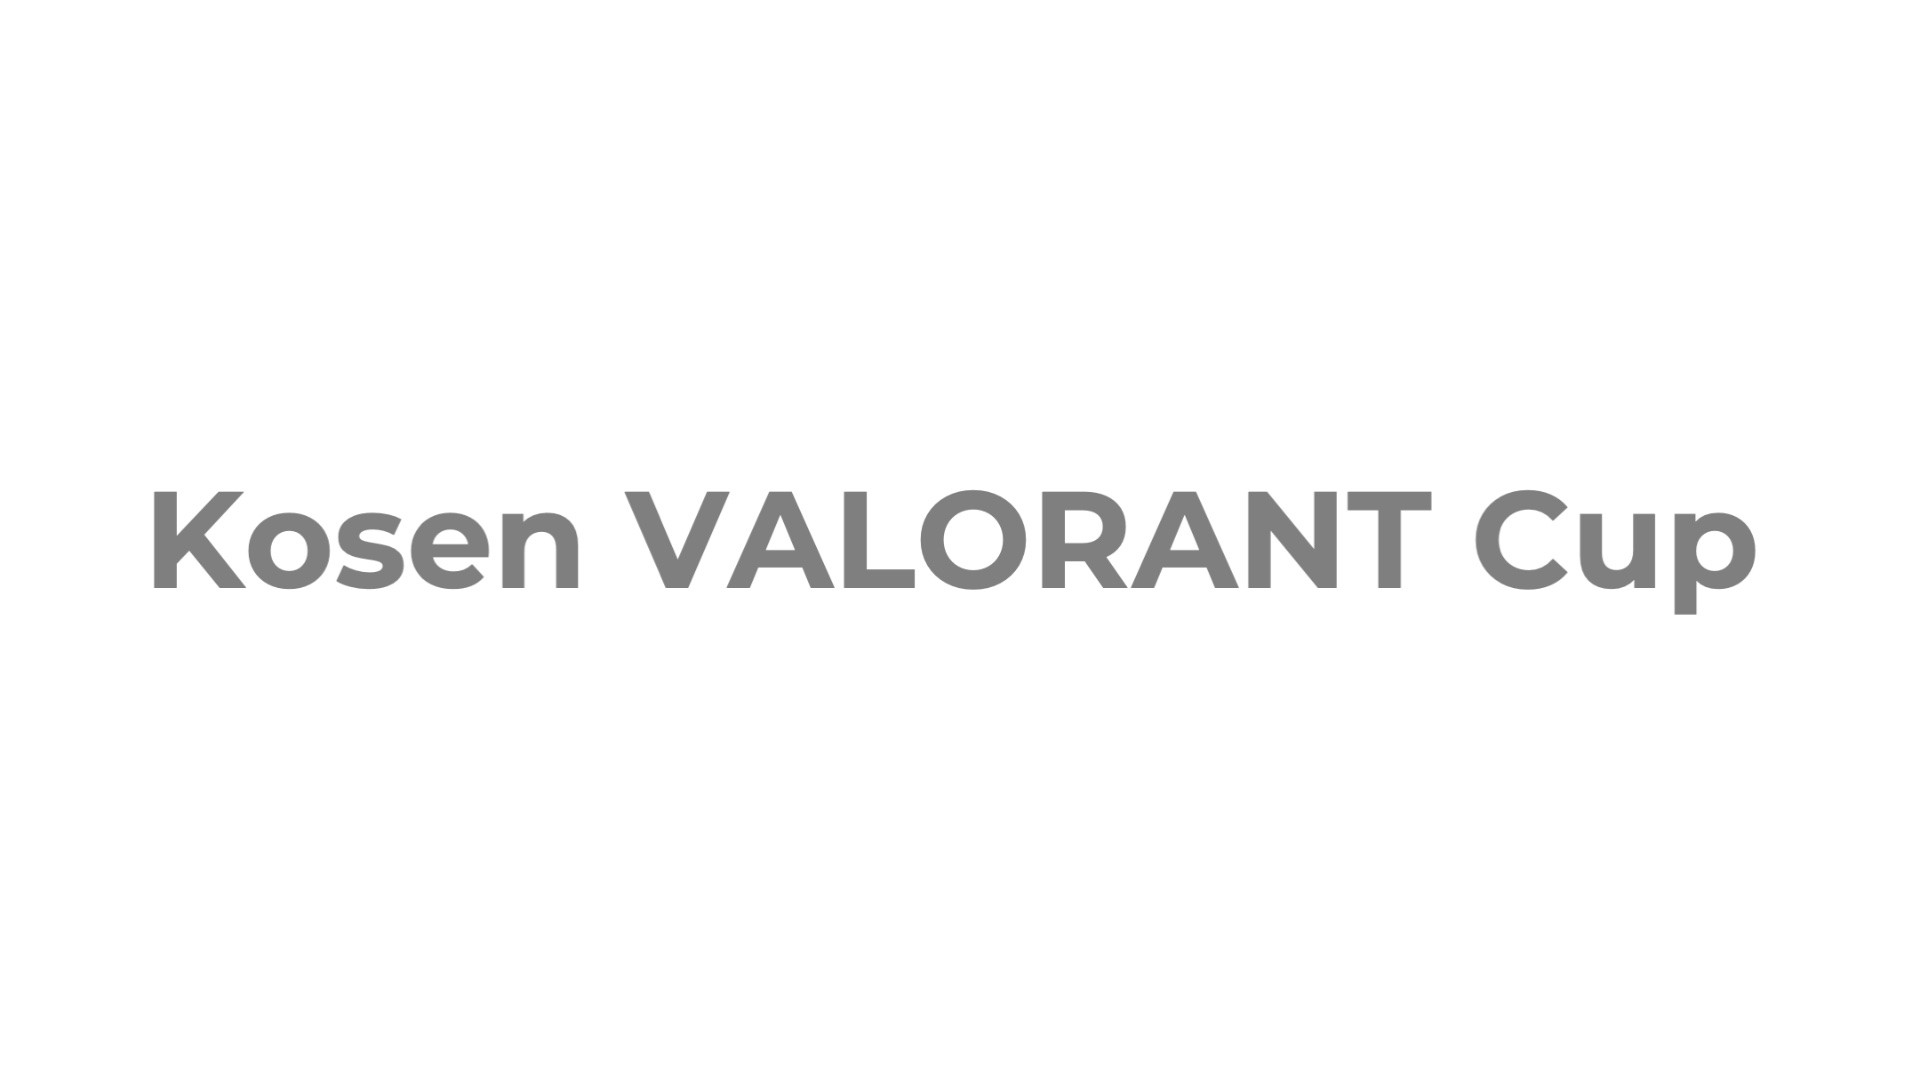 【大会情報】Kosen VALORANT Cup【2022年7月9日、10日】